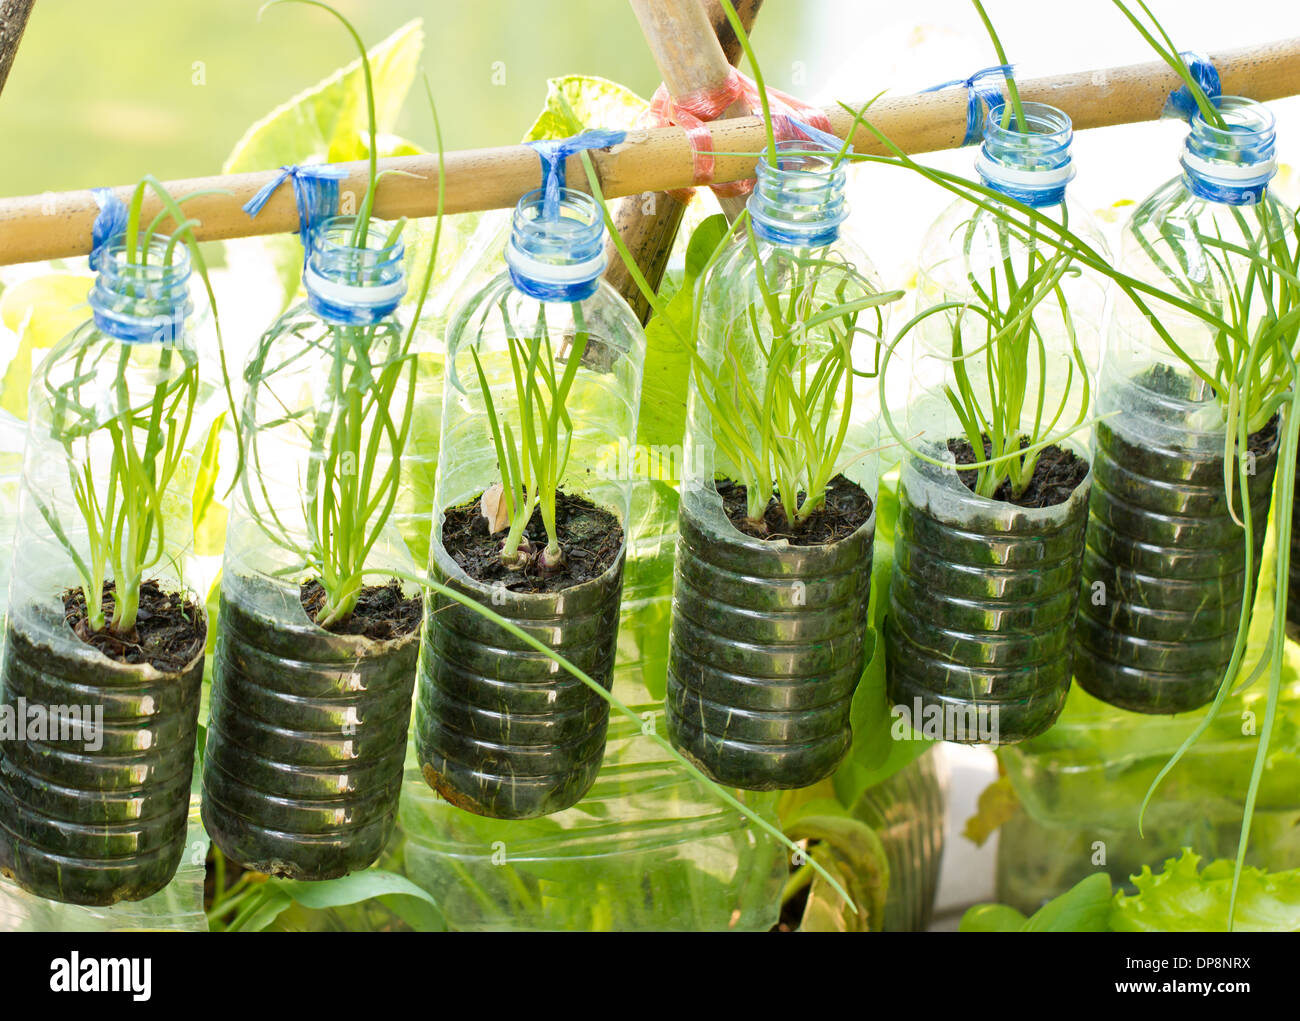 Frühlingszwiebeln In gebrauchten Wasserflasche, Gemüse Pflanze für das städtische Leben wachsen. Stockfoto